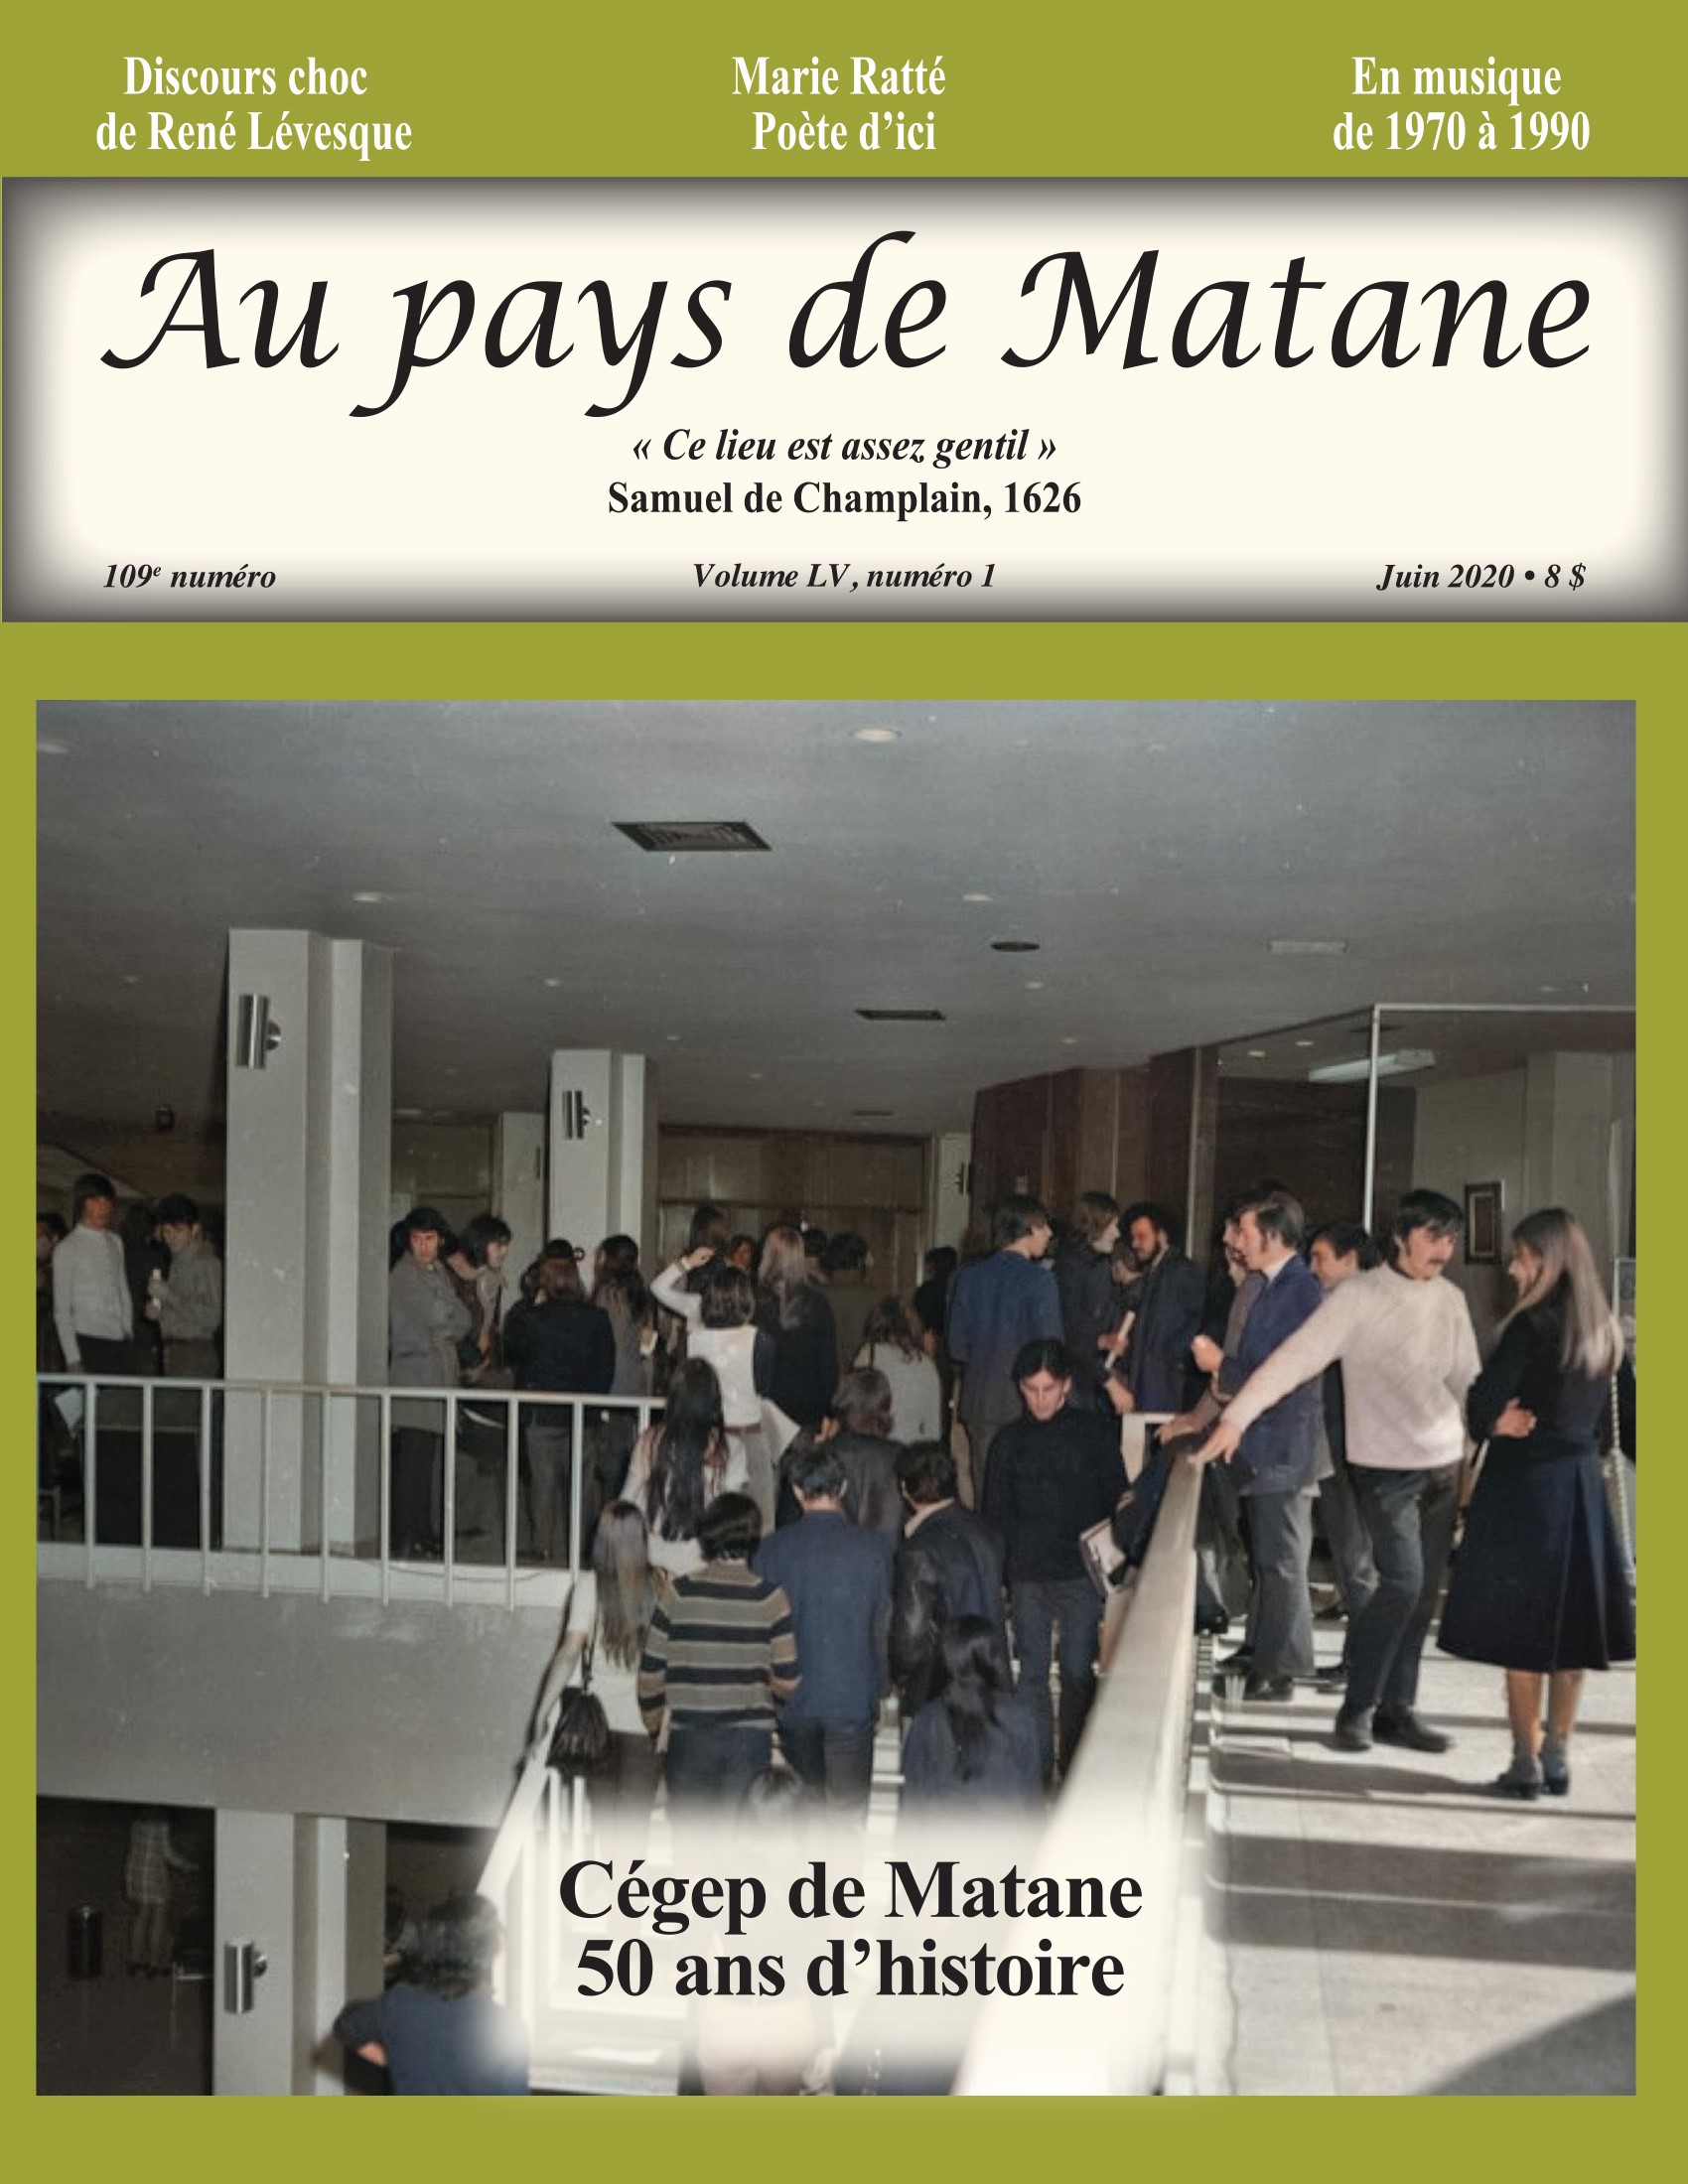 La photo qui illustre la page couverture montre Les étudiants dans le hall d’entrée du Cégep de Matane en 1971.